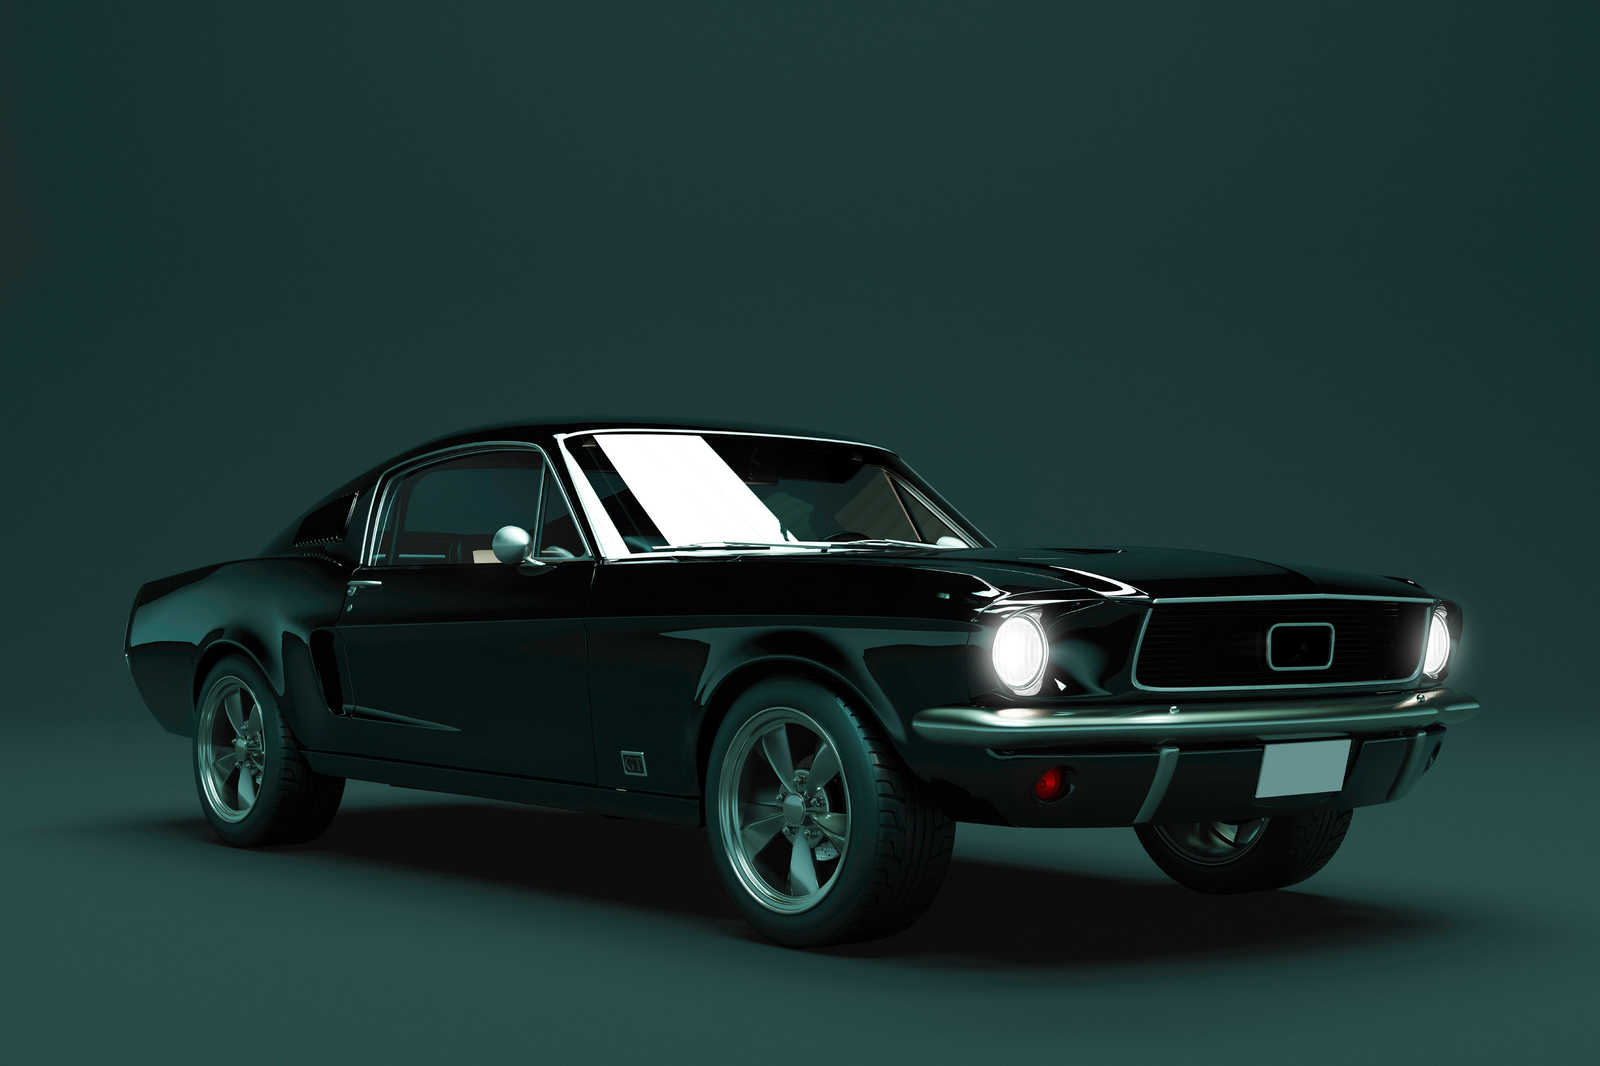             Mustang 2 - Leinwandbild, Mustang 1968 Vintage Car – 0,90 m x 0,60 m
        